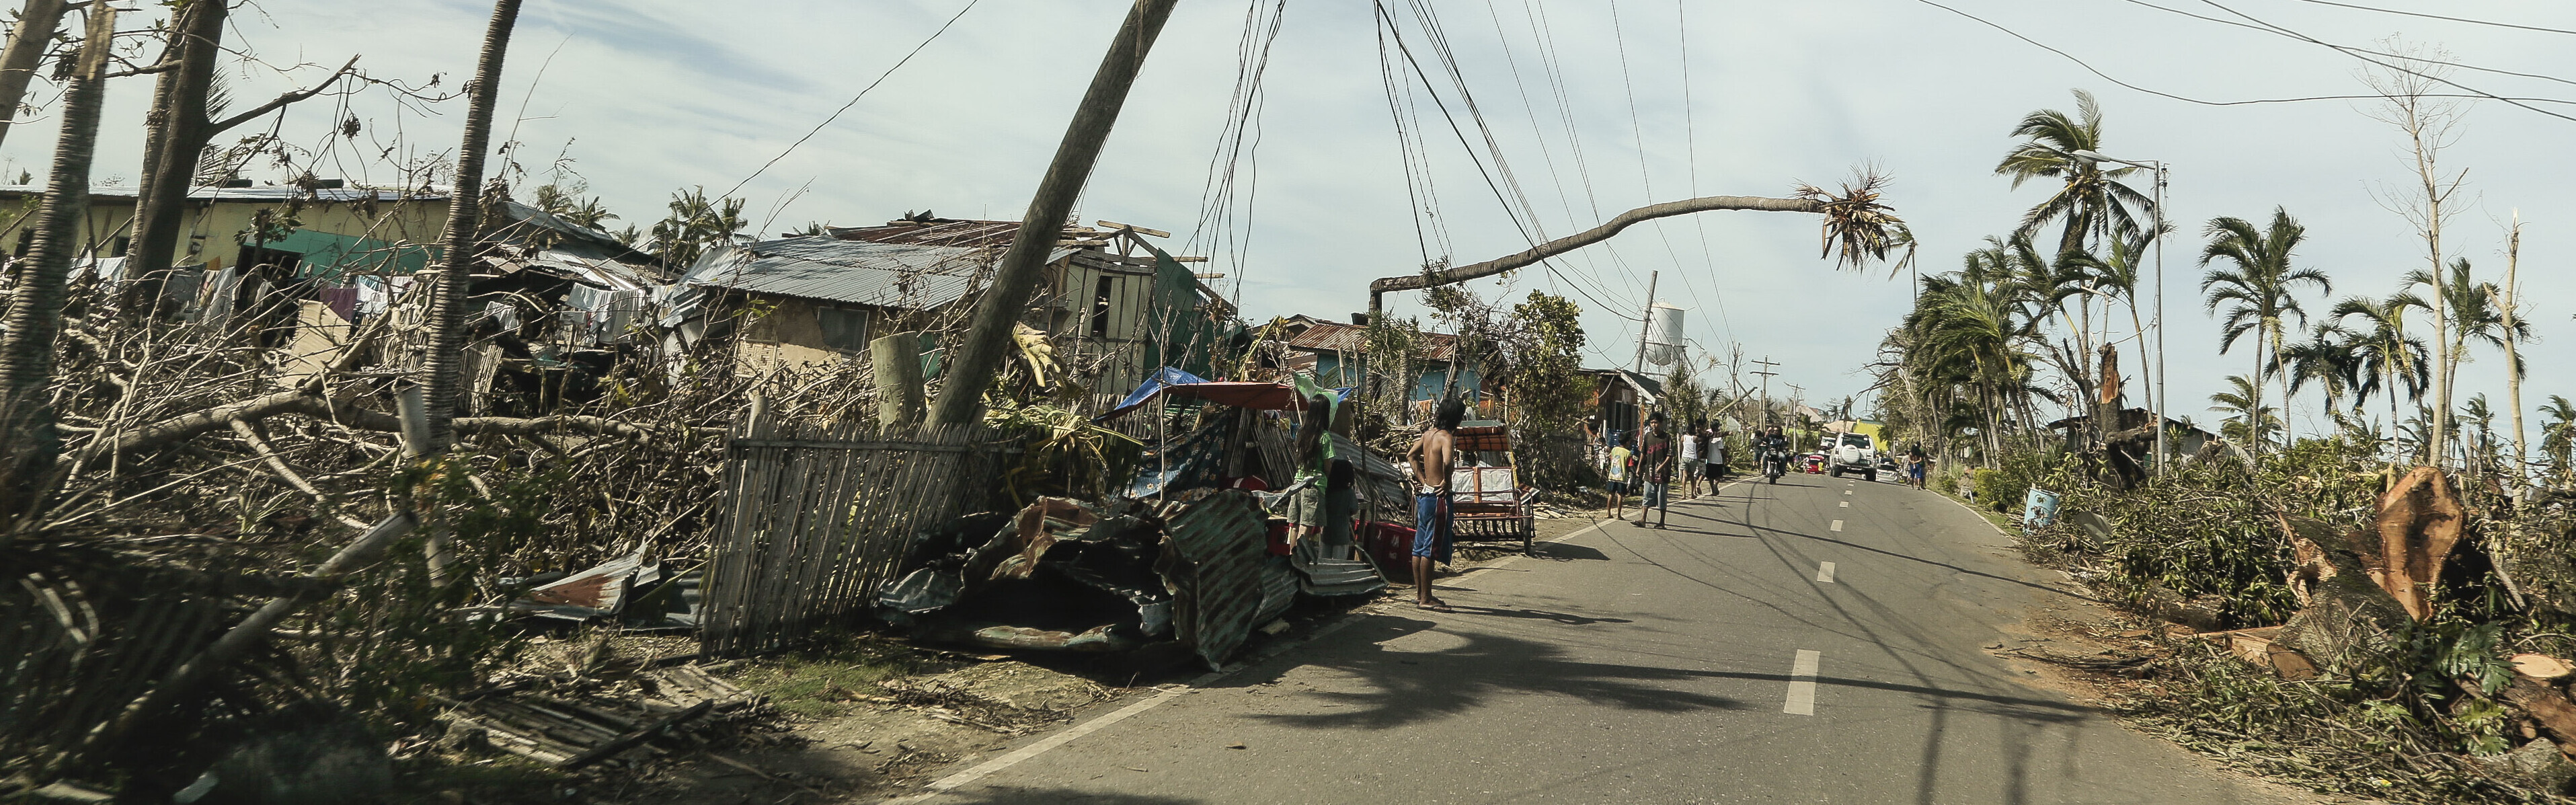 Taifun Haiyan hinterließ auf den Philippinen 2013 Zerstörung